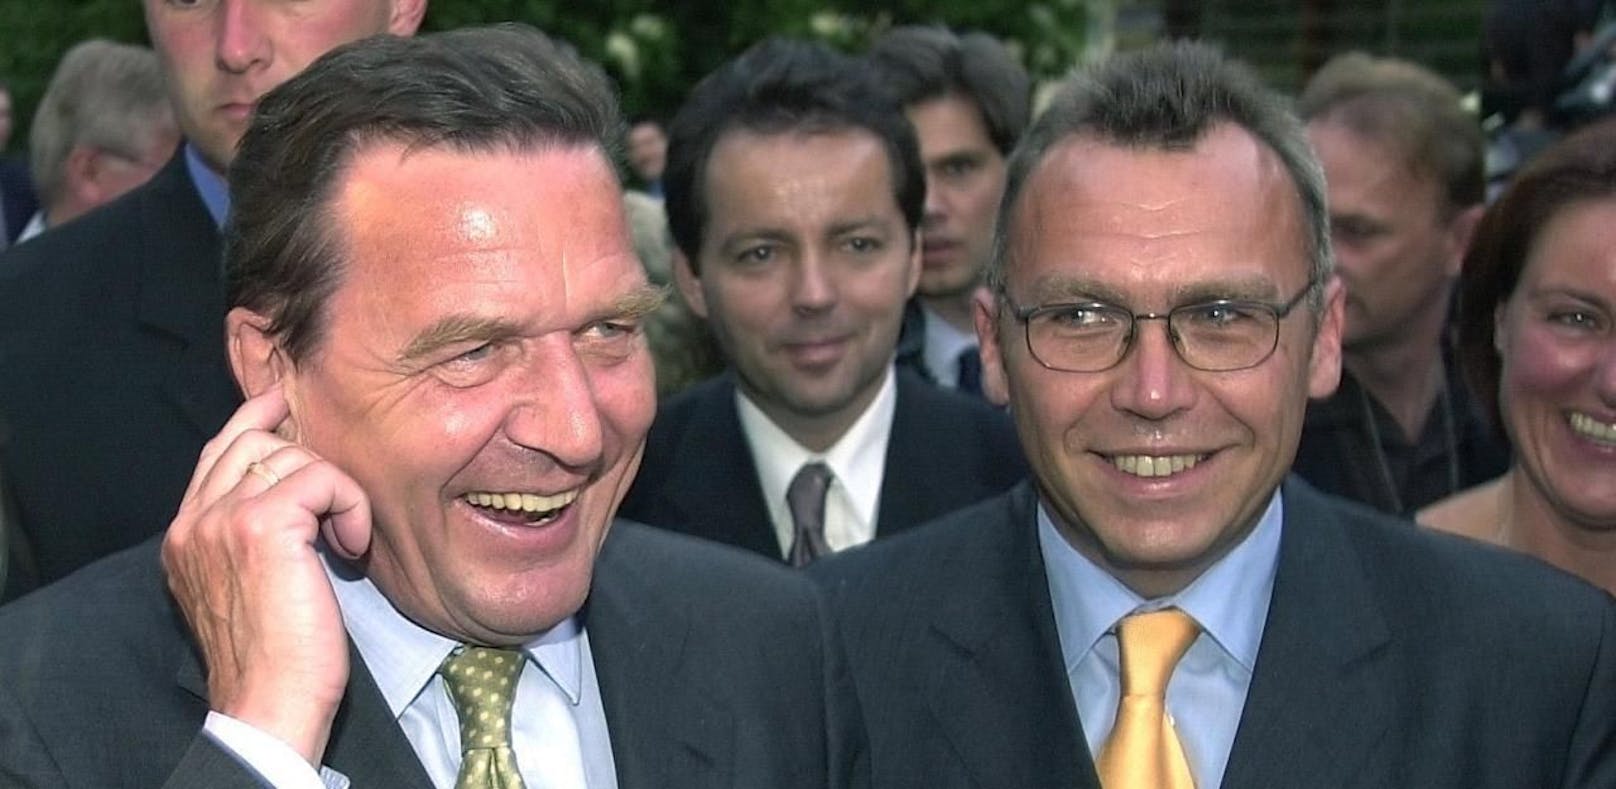 Gerhard Schröder und Alfred Gusenbauer machen Karriere, ihre SP-Parteien reagieren gereizt.